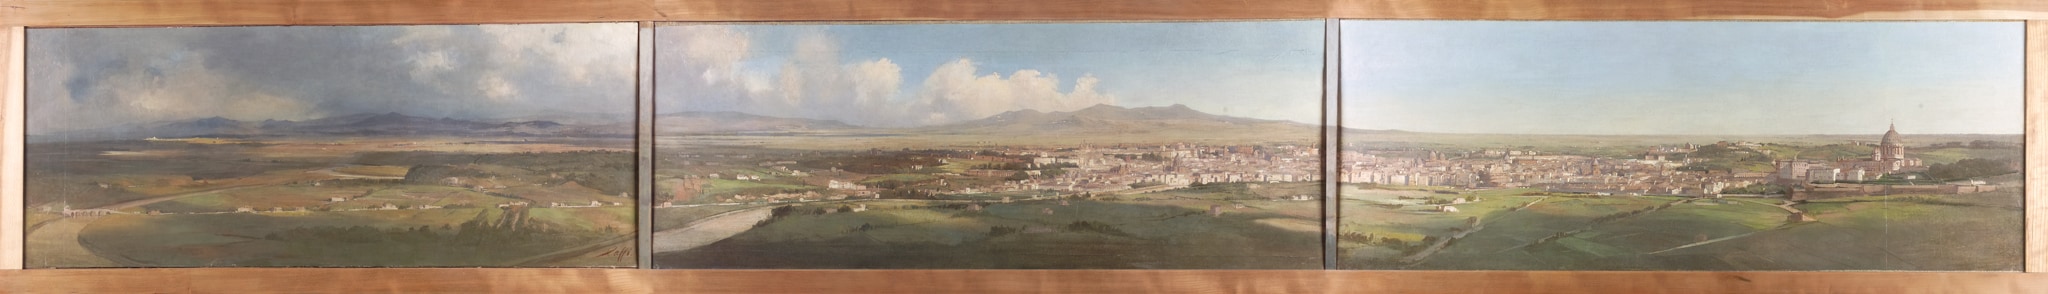 Ippolito Caffi (Belluno 1809 - Lissa 1866) -"Panorama di Roma da Monte Mario", 1857. Olio su carta riportata su tela, 32 x 262,5 cm